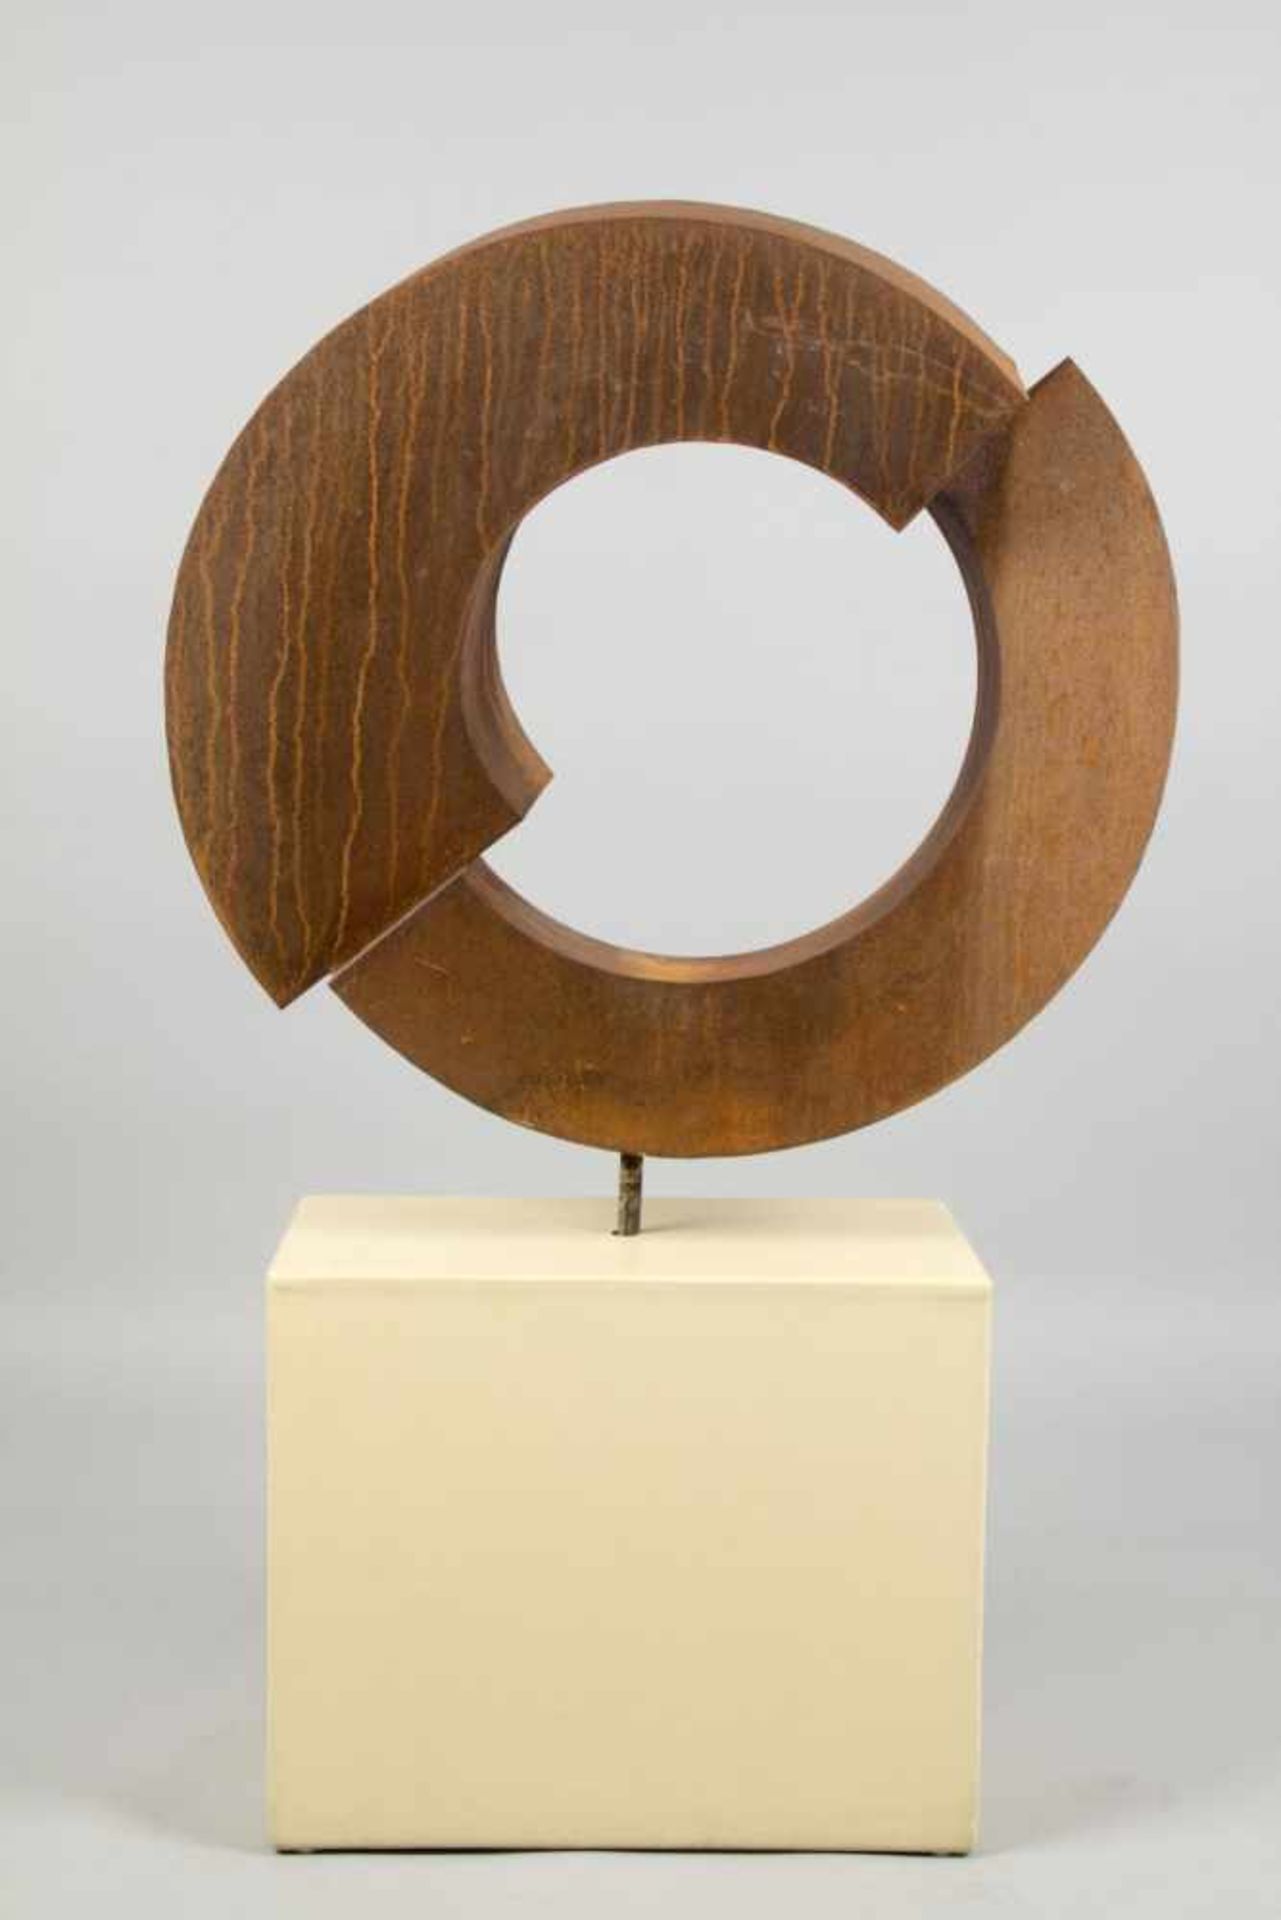 Unbekannt, 20. Jh.Aufgeschnittener Kreis. Skulptur aus korrodiertem Eisen. 81 x 85 cm. Die - Bild 3 aus 8